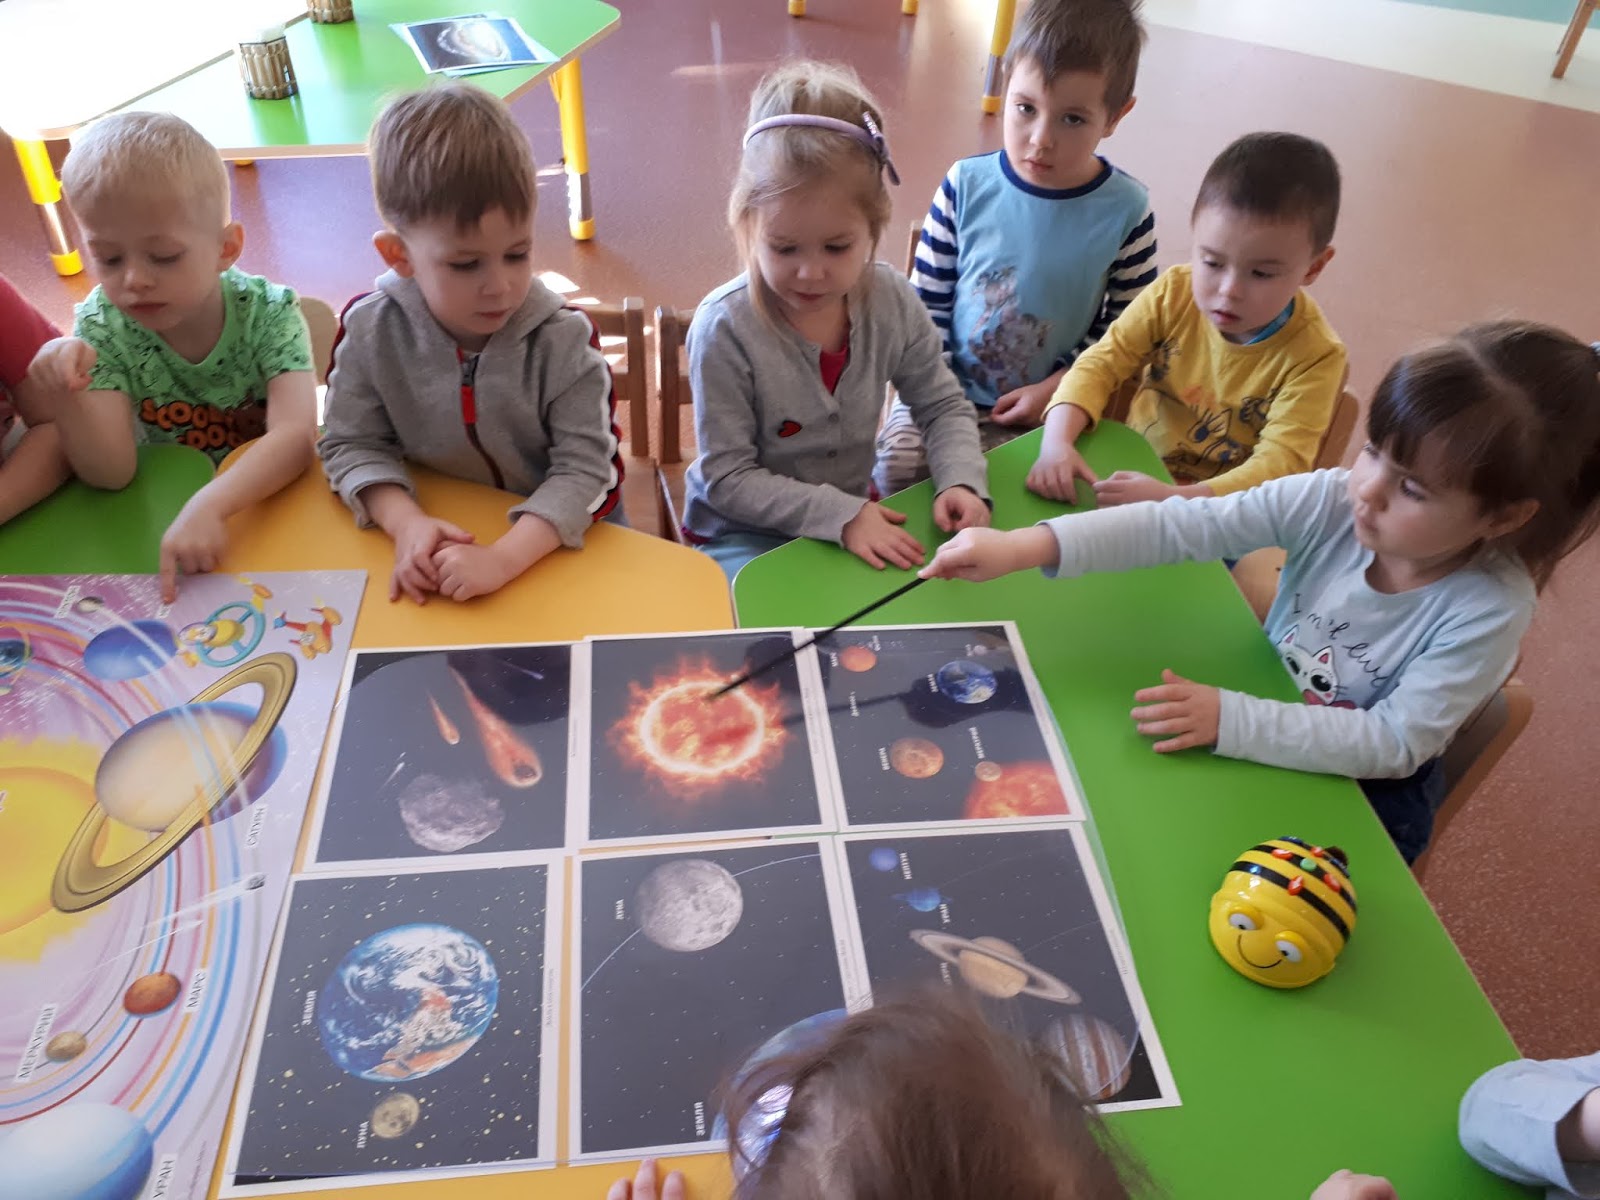 Познавательное занятие космос. Космическое занятие в садике. Занятия про космос в детском саду. Дети изучают планеты в детском саду. Дети изучают космос.